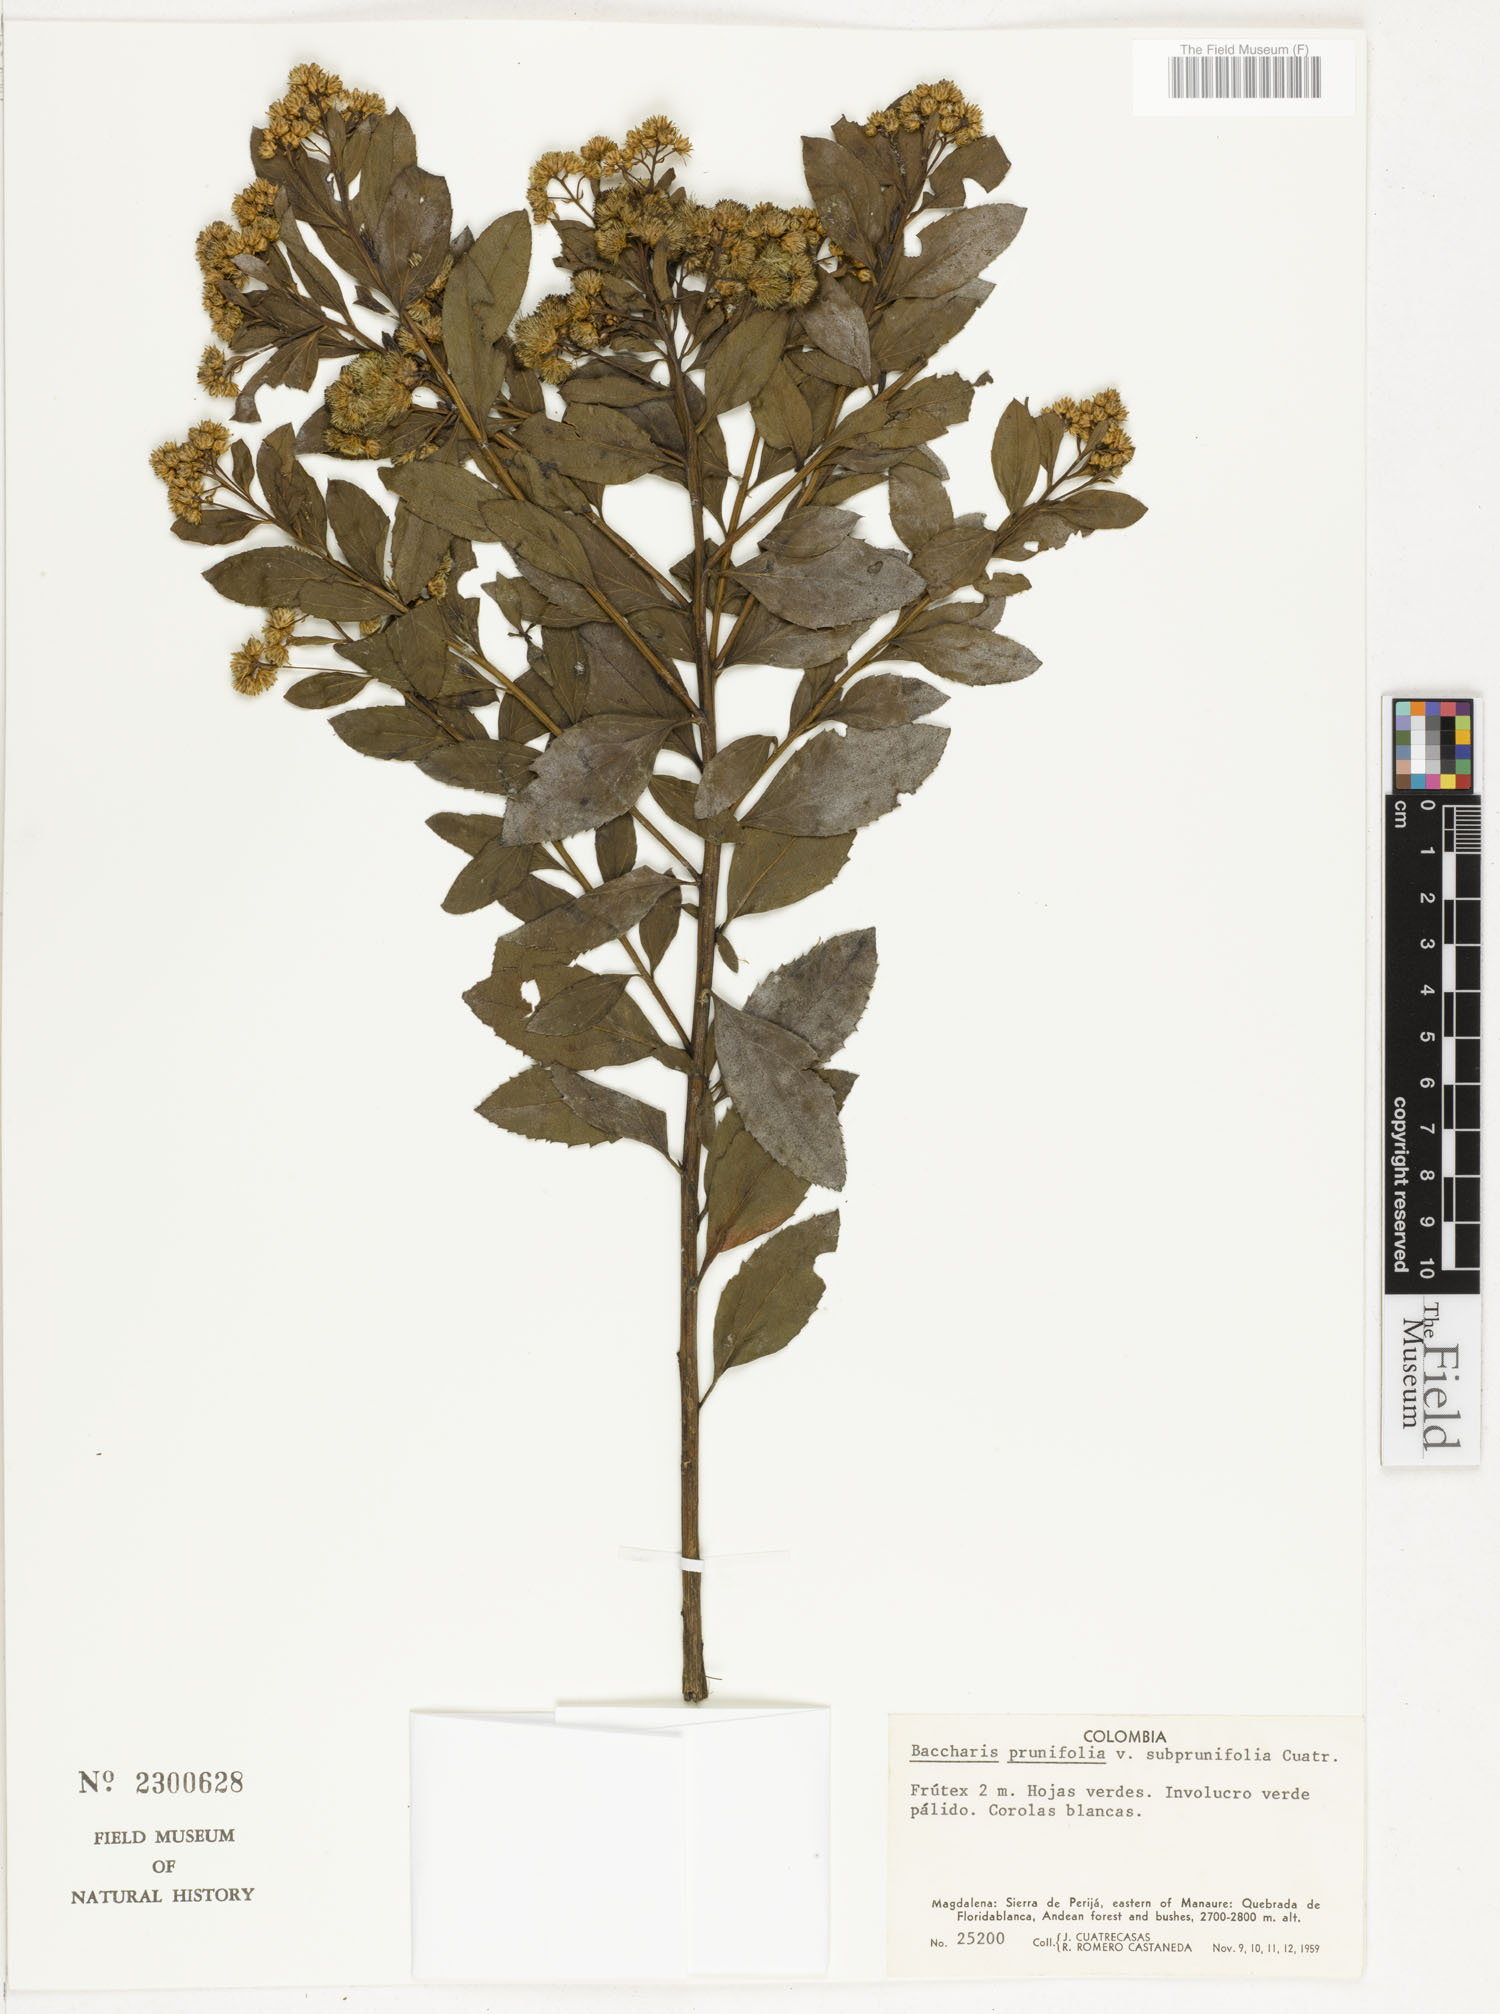 Baccharis prunifolia var. subprunifolia image